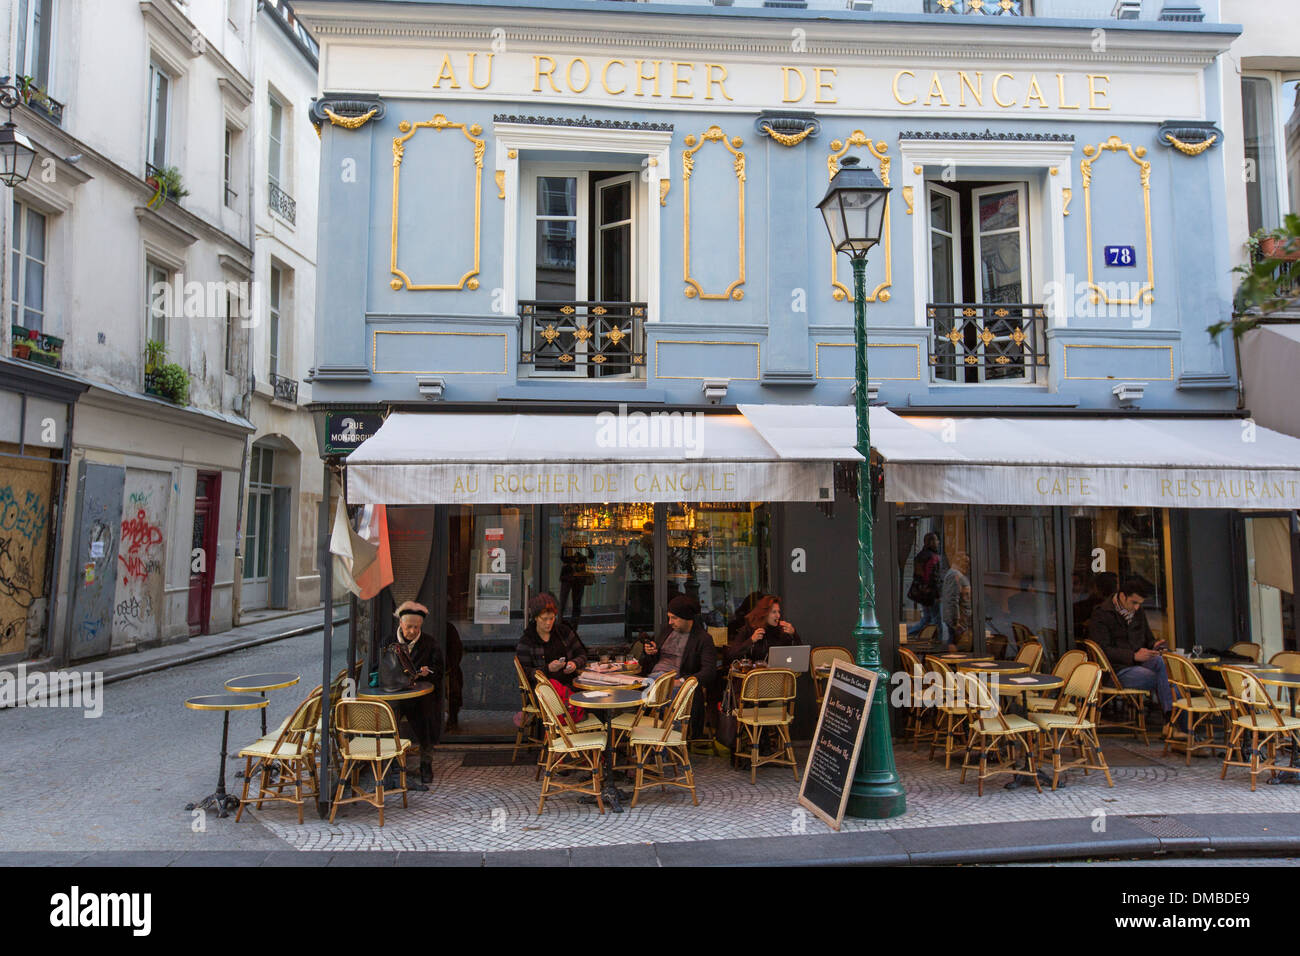 The Au Rocher De Cancale cafe on Rue Montorgueil in Paris, France Stock ...